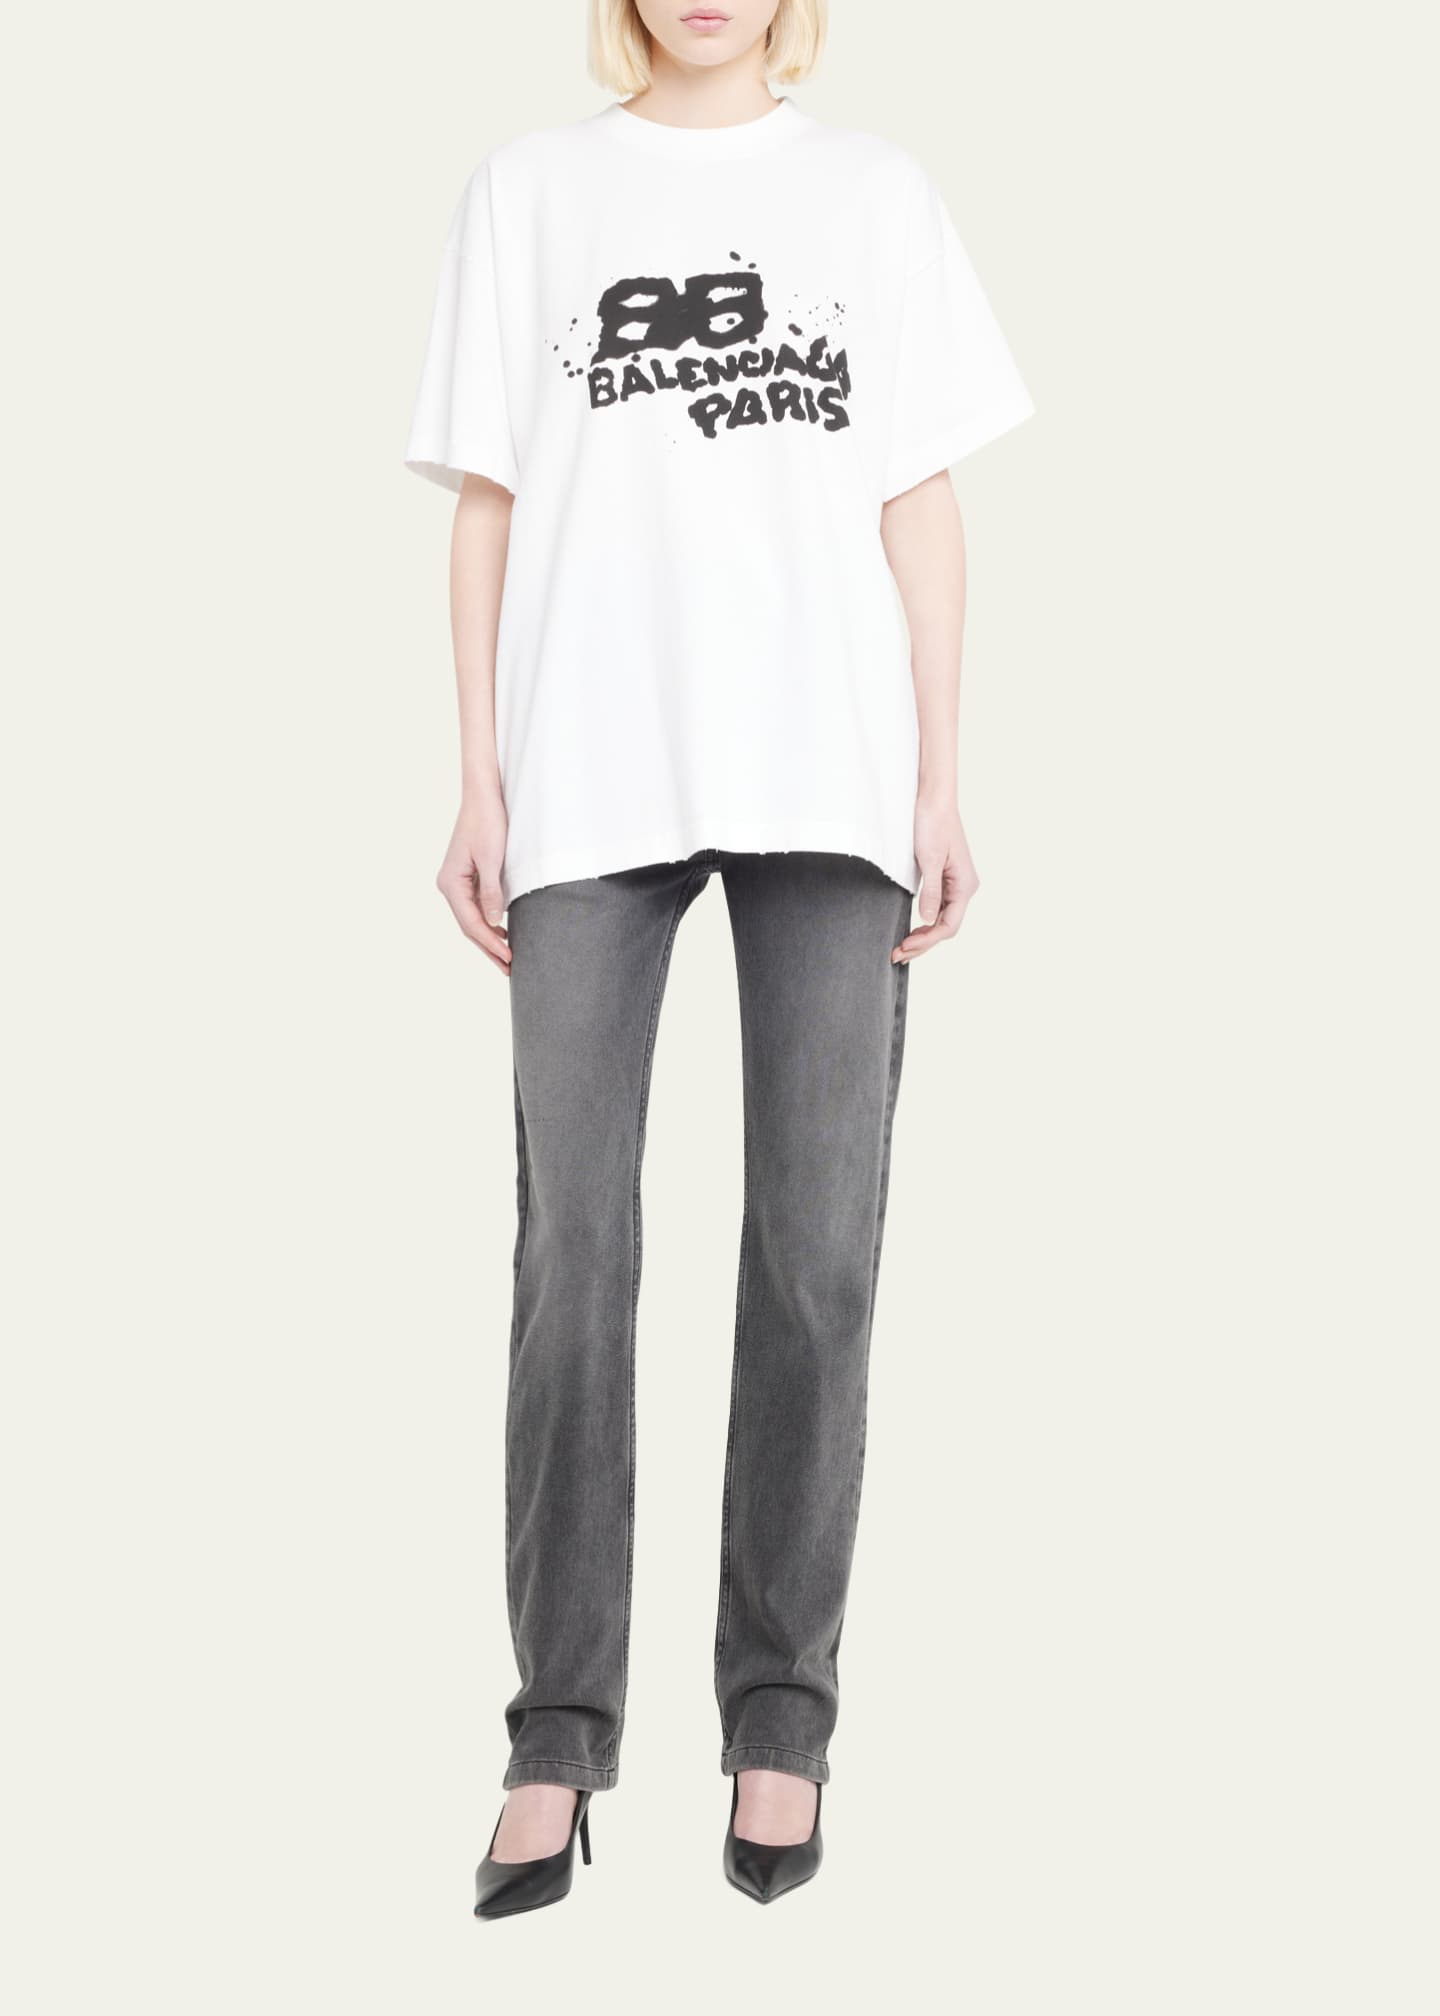 Balenciaga Medium Fit Logo T-shirt - Farfetch